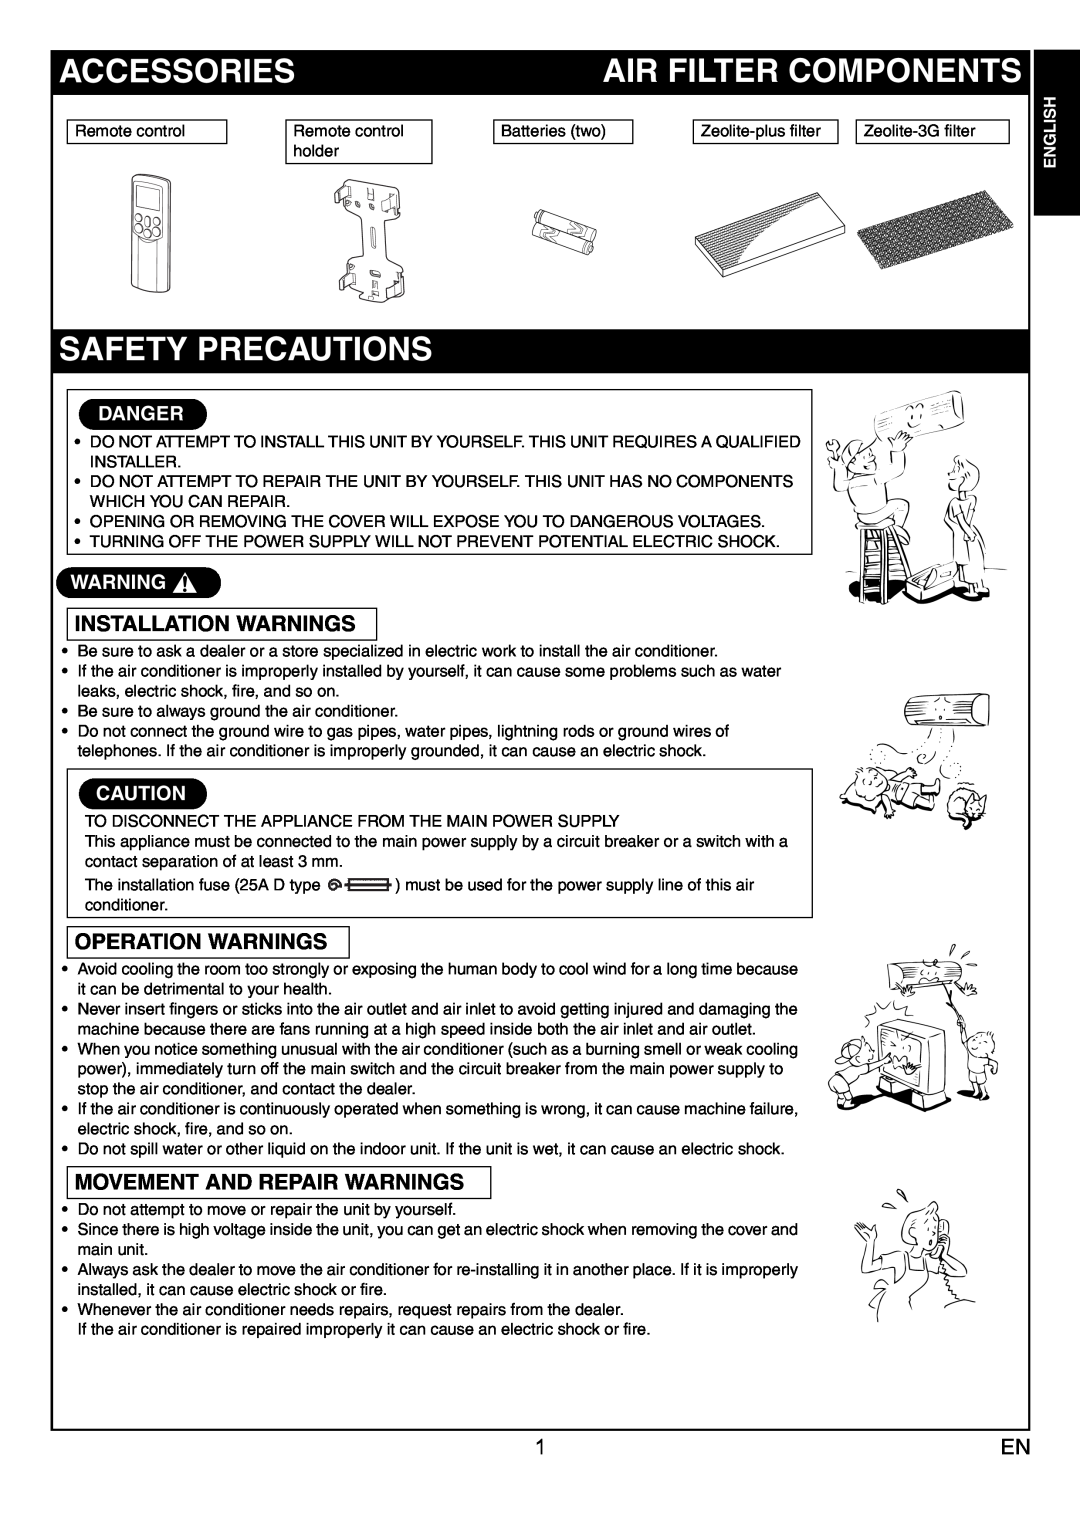 Toshiba RAS-10JKVP-E Accessories, Air Filter Components, Safety Precautions, English Français Deutsch Italiano Español 